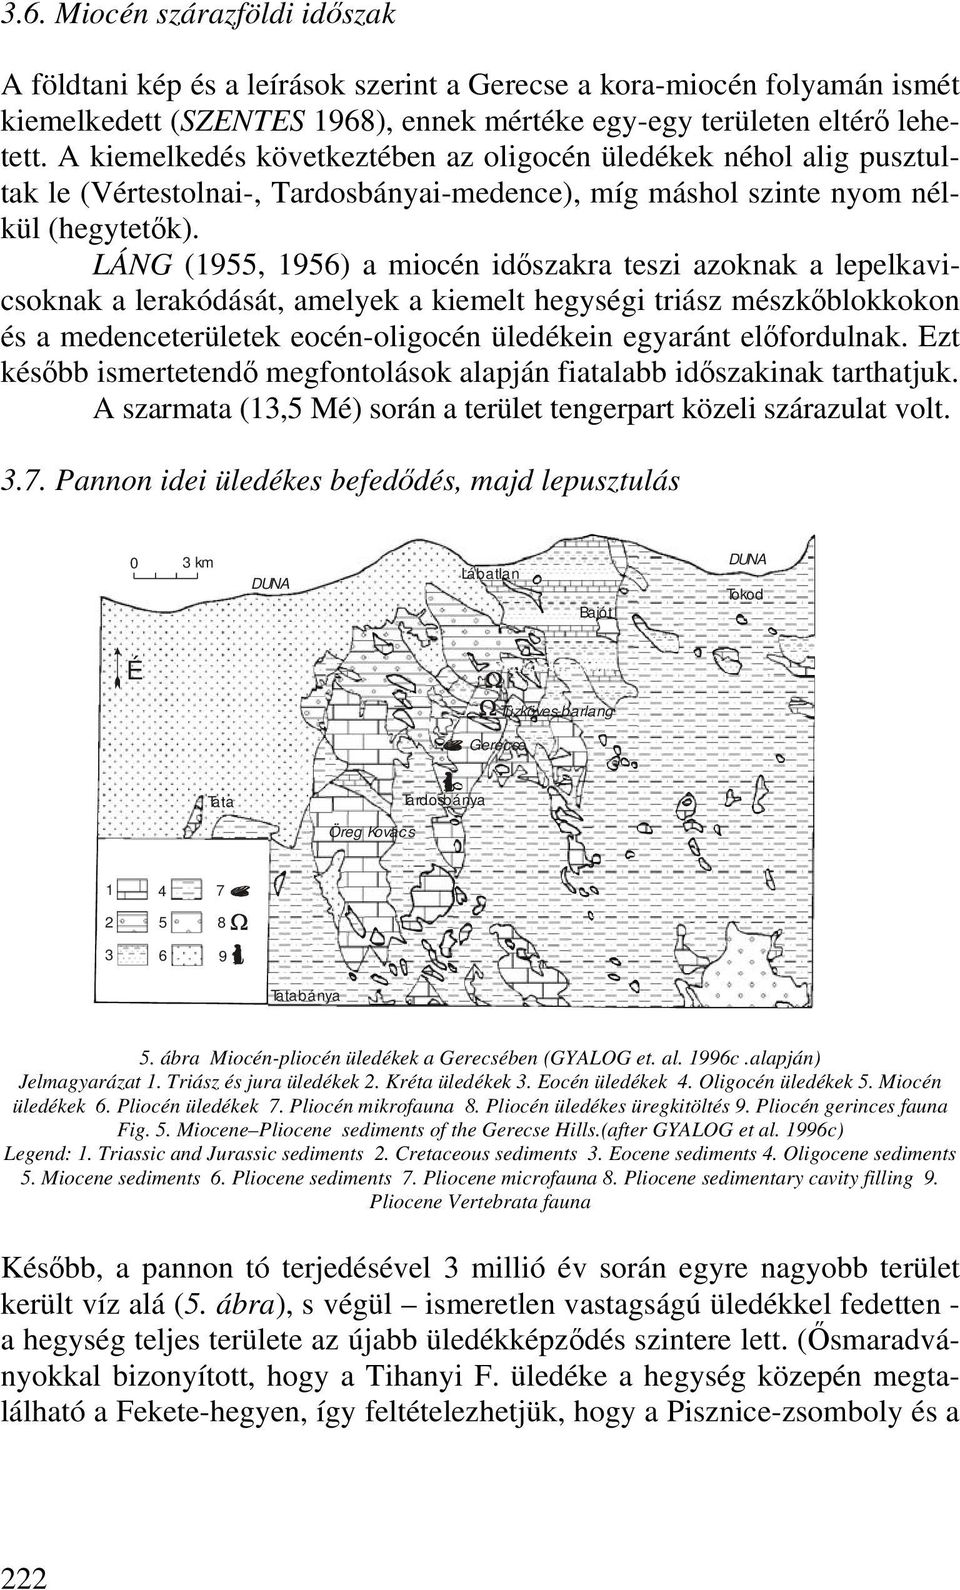 LÁNG (1955, 1956) a miocén időszakra teszi azoknak a lepelkavicsoknak a lerakódását, amelyek a kiemelt hegységi triász mészkőblokkokon és a medenceterületek eocén-oligocén üledékein egyaránt